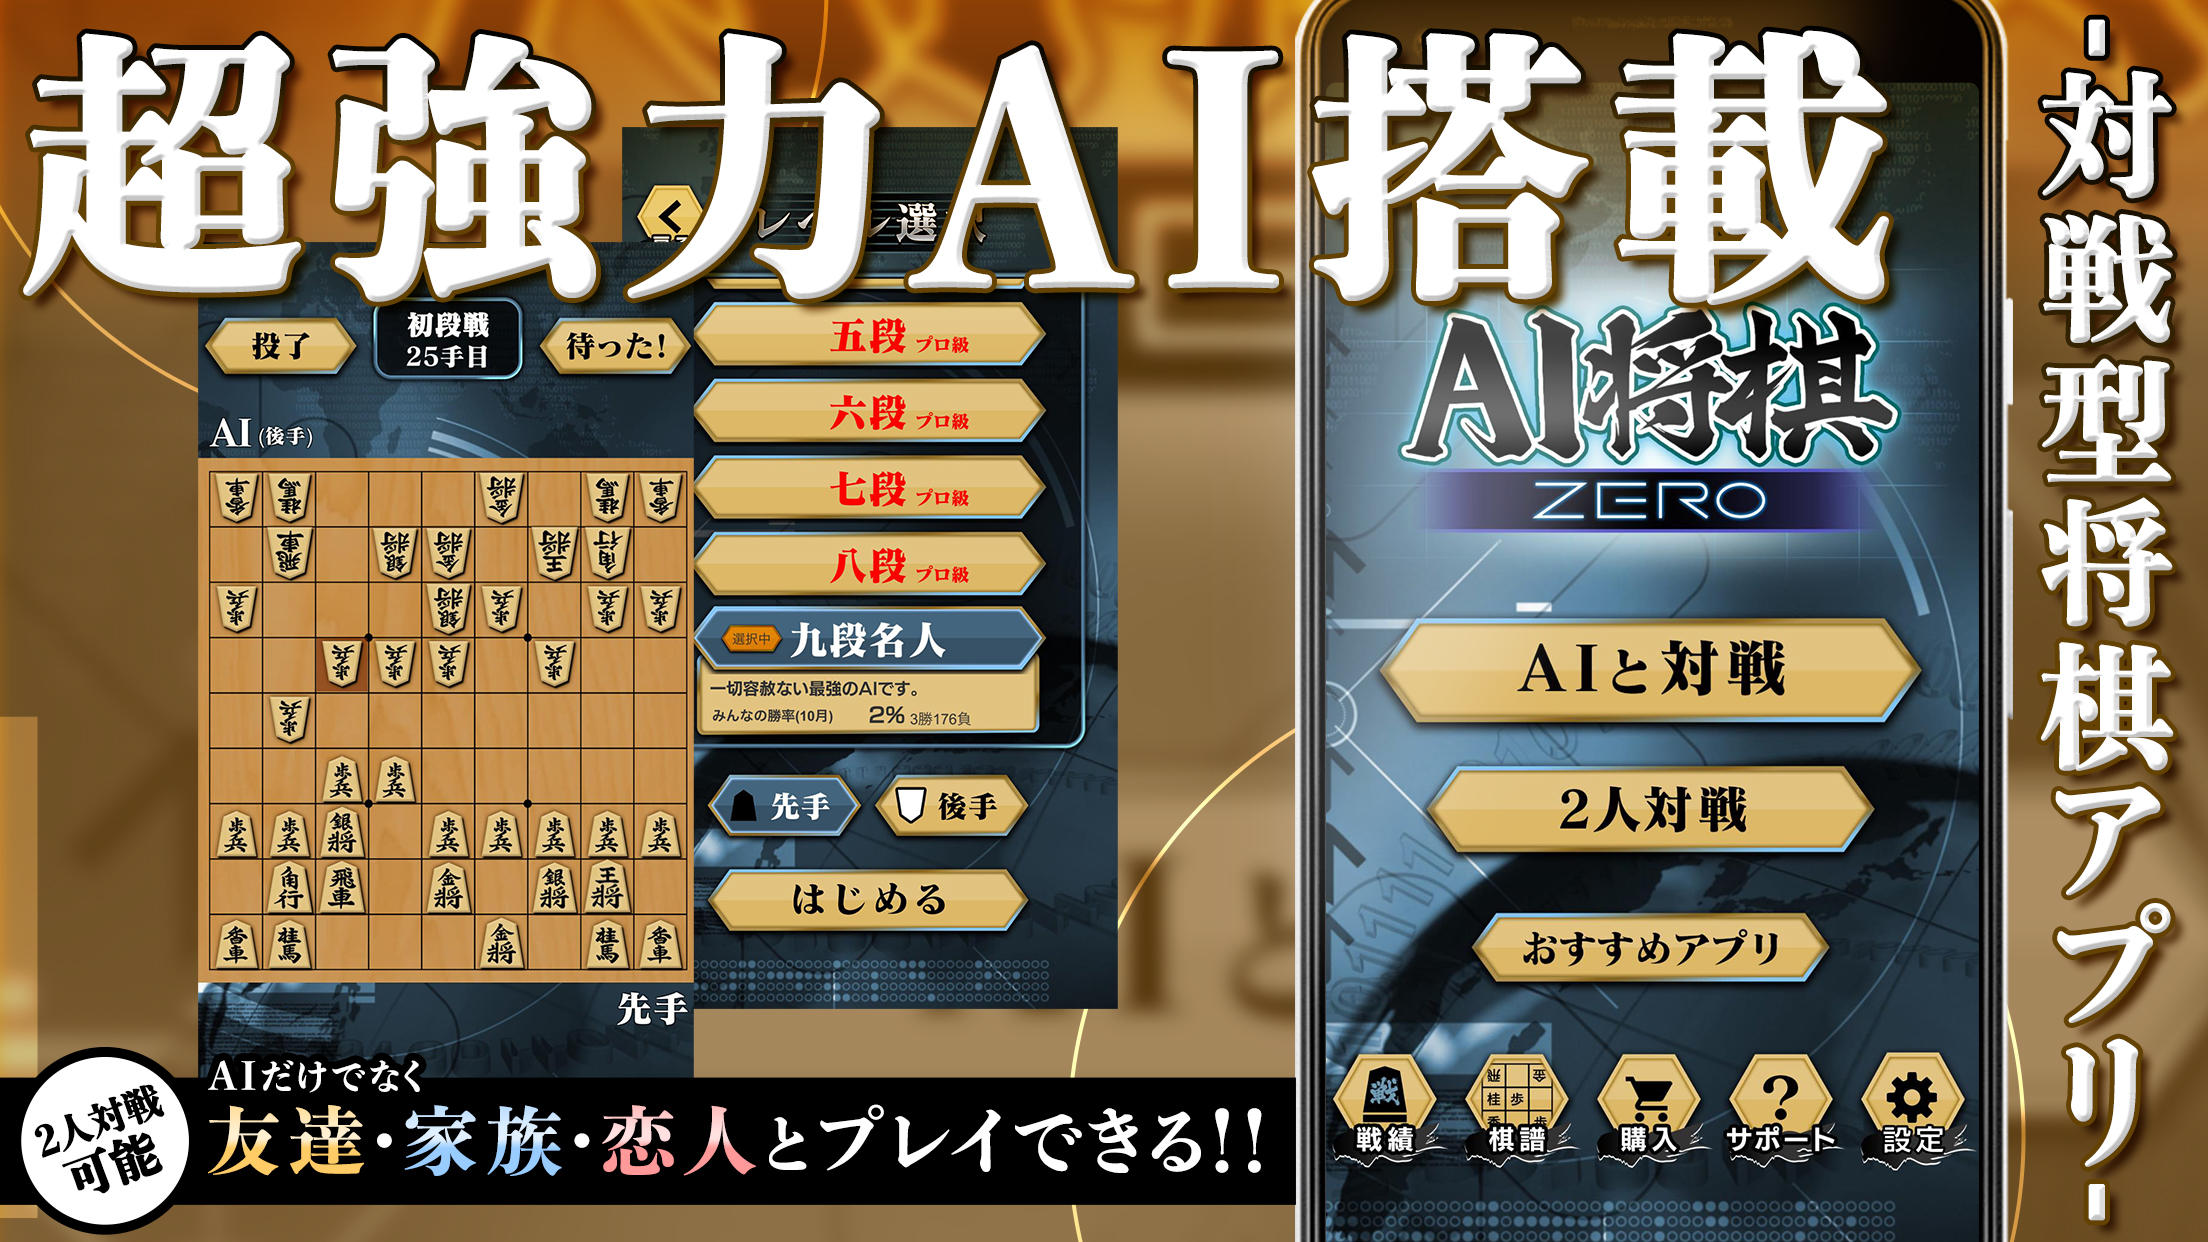 Screenshot 1 of AI将棋 ZERO - 無料の将棋ゲーム 3.12.8